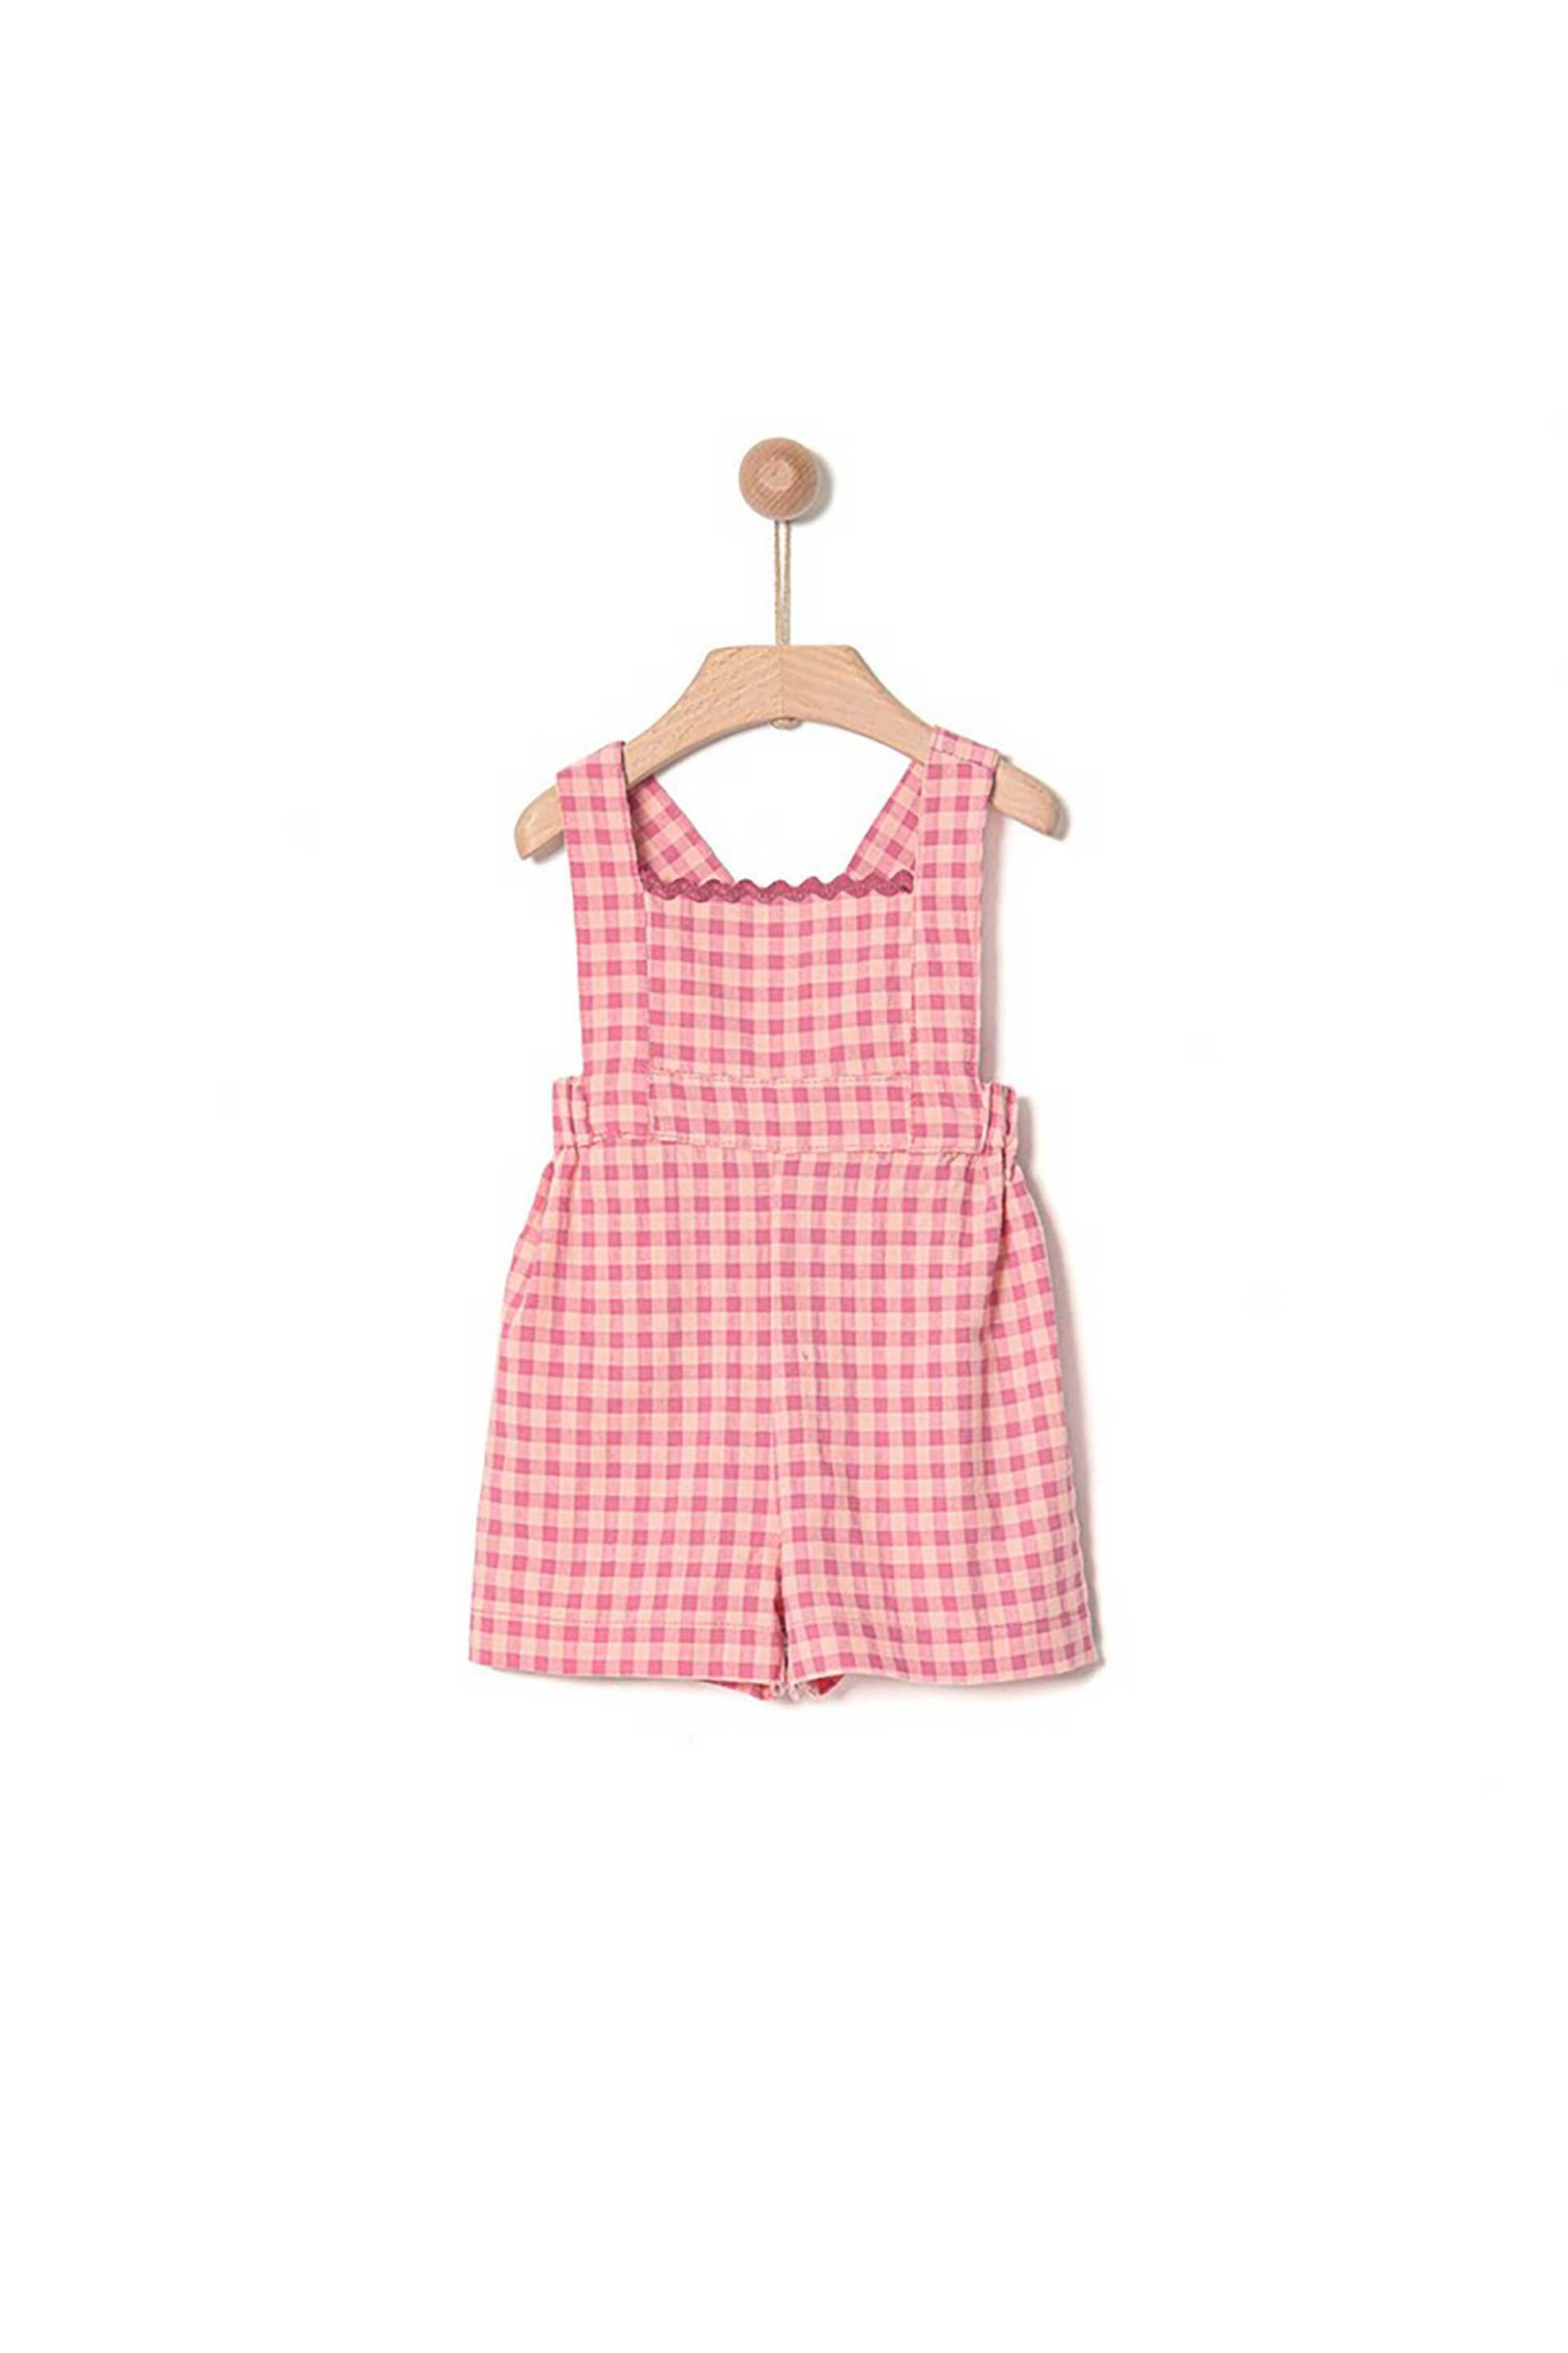 Παιδικά Ρούχα, Παπούτσια & Παιχνίδια > Παιδικά Ρούχα & Αξεσουάρ για Κορίτσια > Παιδικές Μπλούζες για Κορίτσια > Παιδικές Σαλοπέτες για Κορίτσια Yell-oh! παιδική ολόσωμη φόρμα με καρό σχέδιο - 41090356019 Ροζ